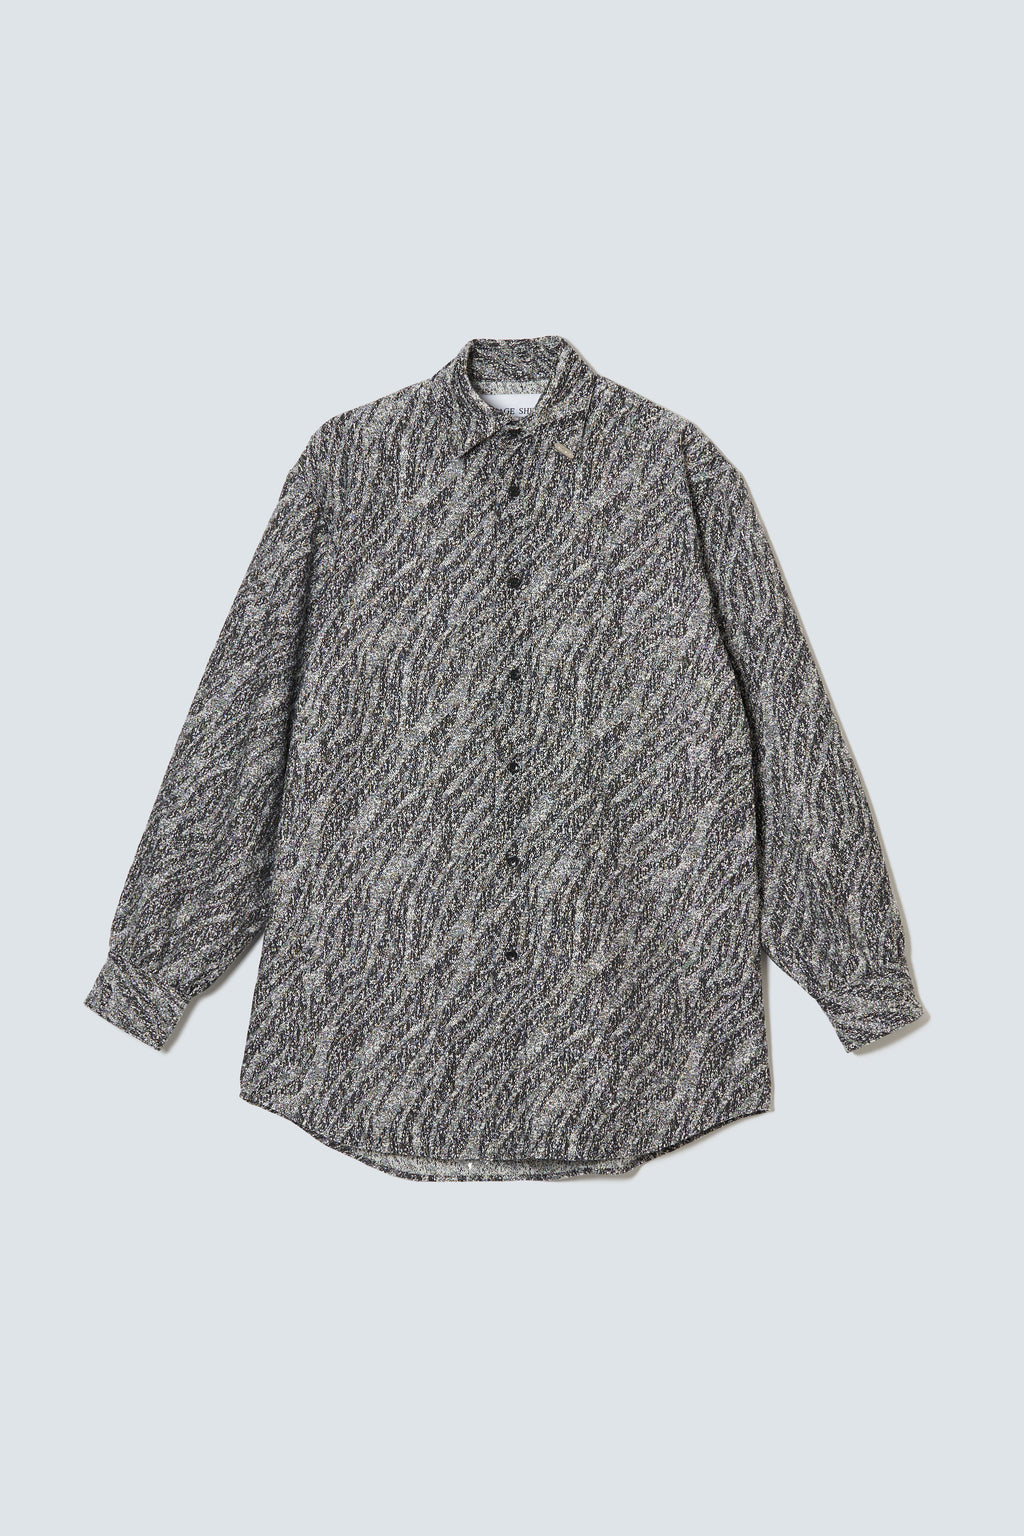 【予約商品】"Sazare"Pebble Tweed Shirt